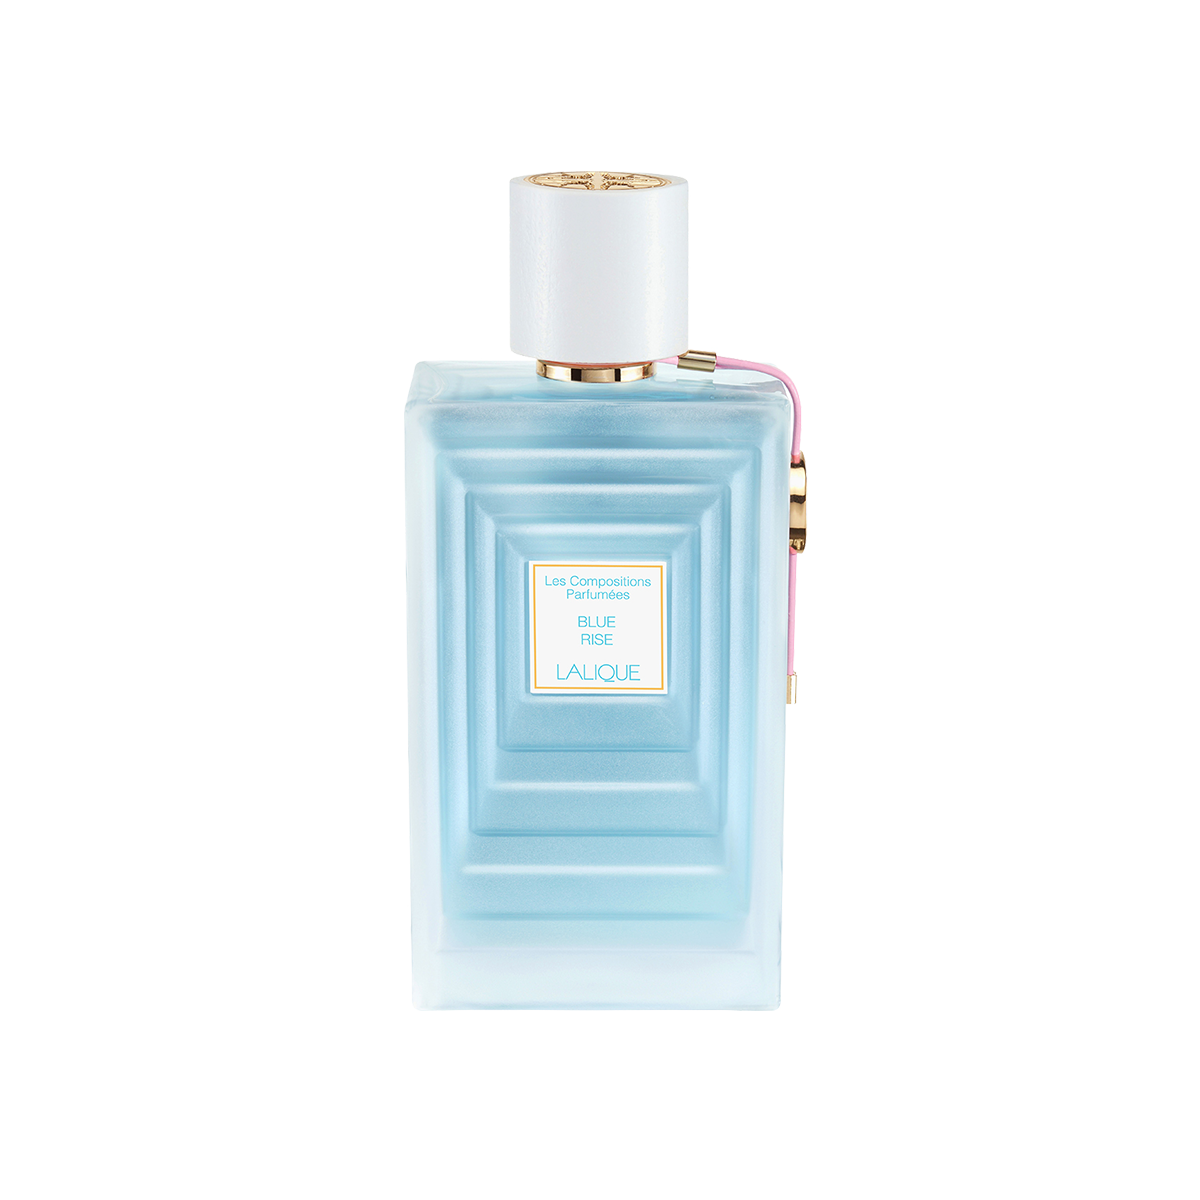 Les Compositions Parfumées White<br>Blue Rise / Eau de Parfum 100ml